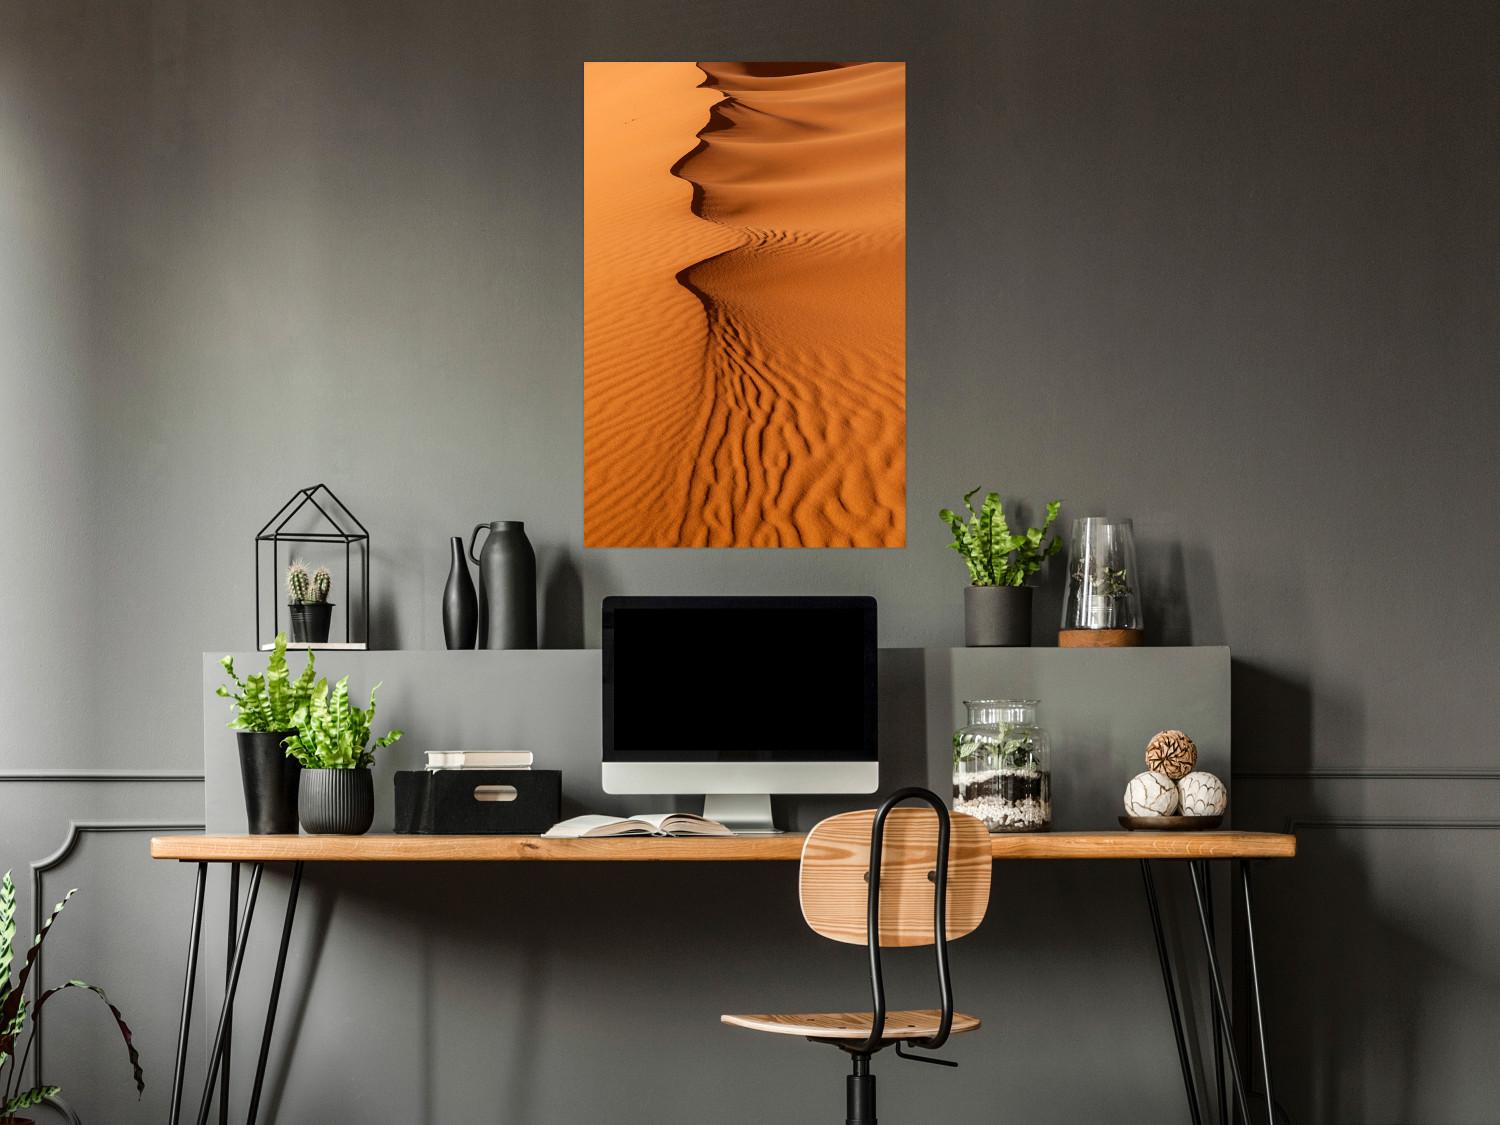 Poster Sandy Shapes - orange-brown desert landscape in Morocco